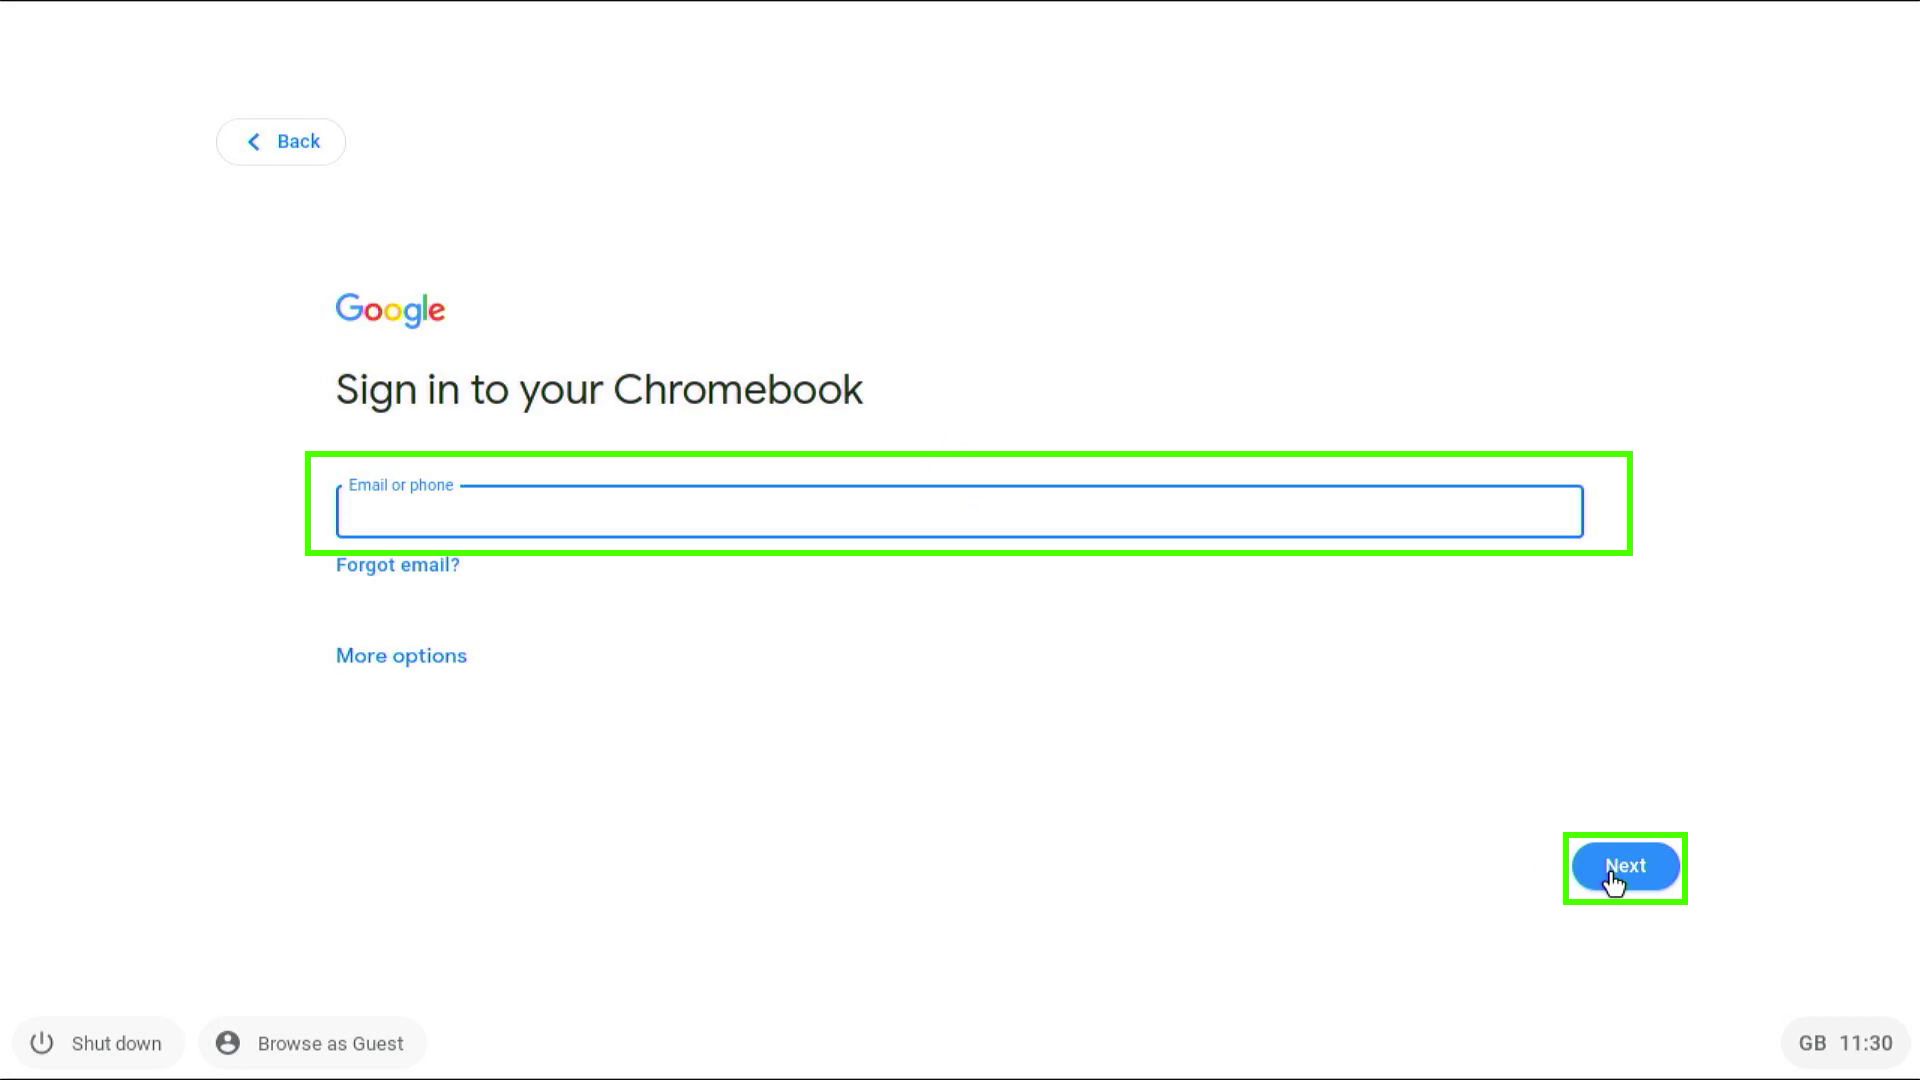 Cómo convertir tu vieja PC en una nueva Chromebook con Chrome OS Flex